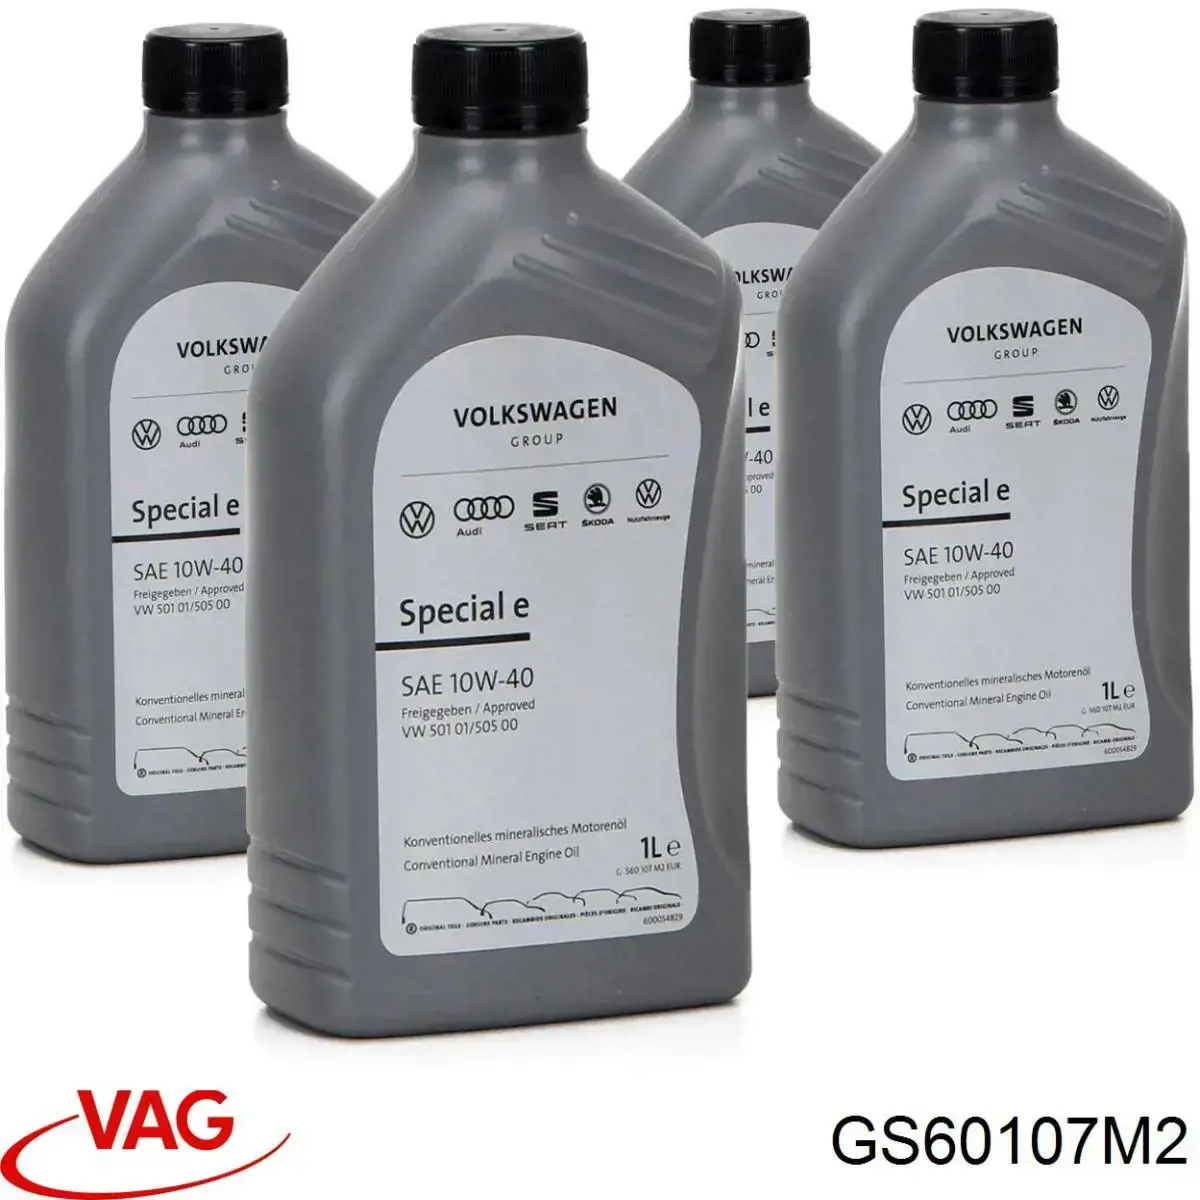 VAG (GS60107M2)